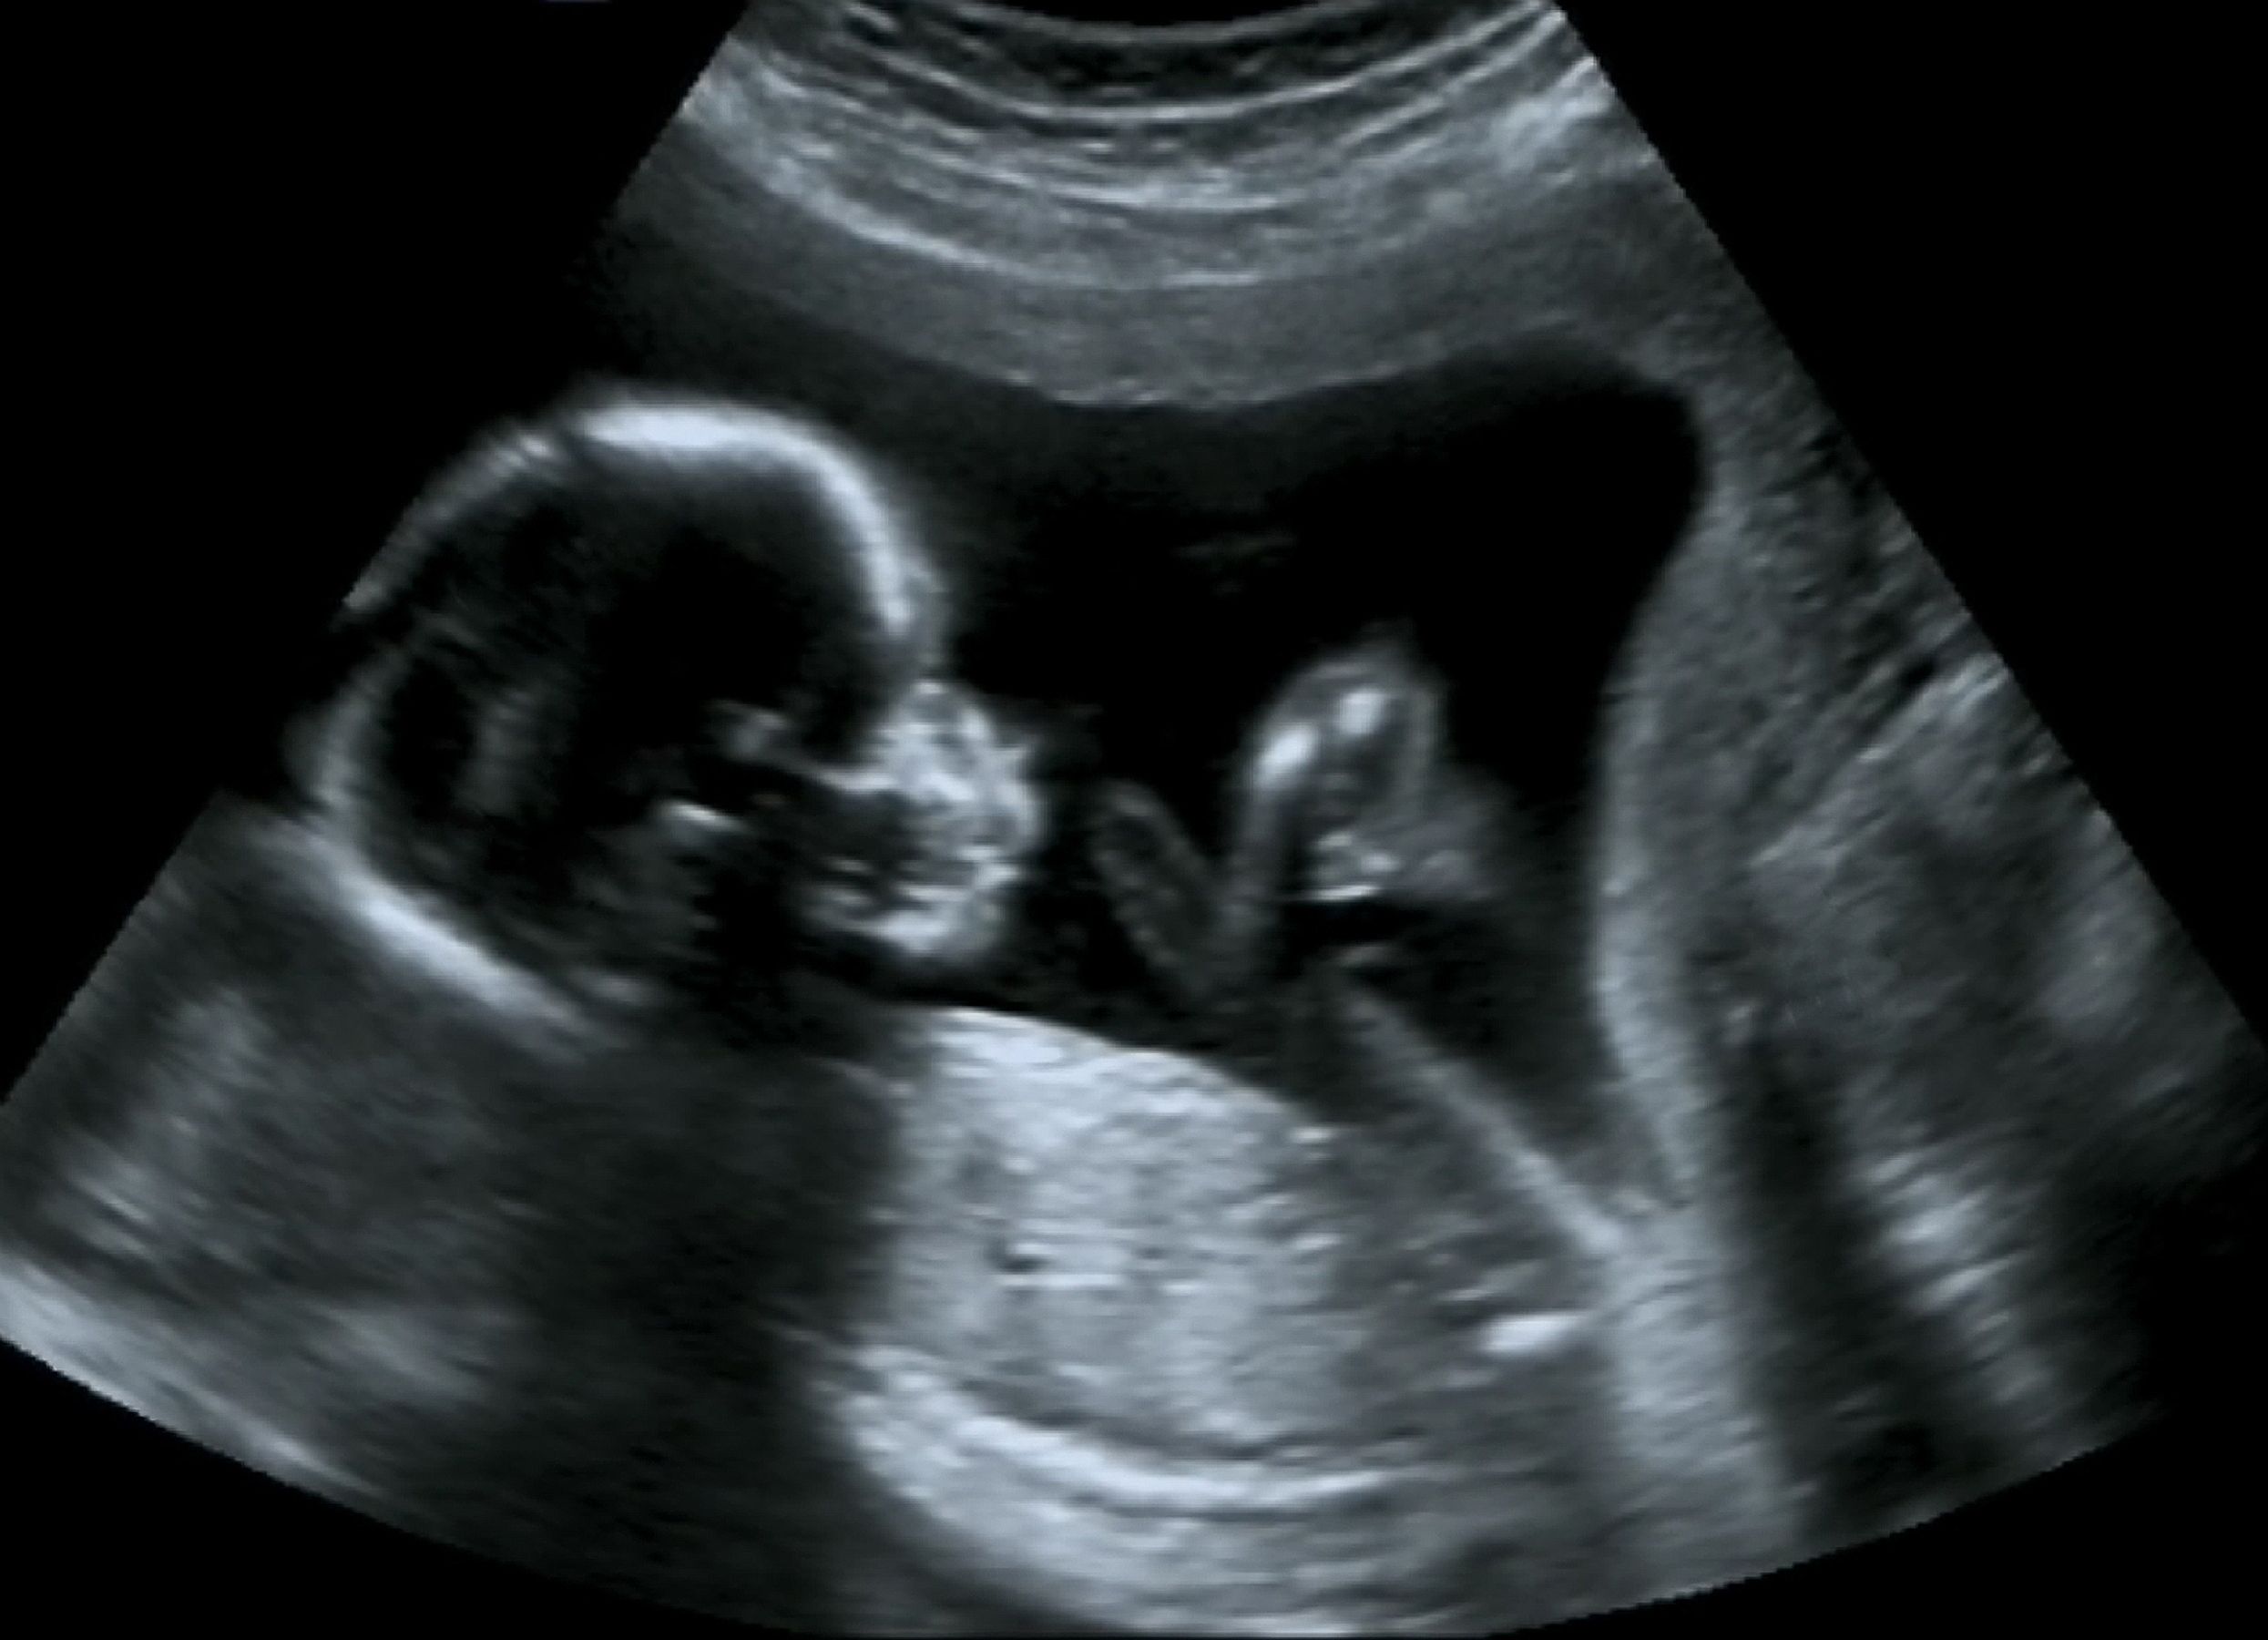 孕妇在医院做B超-蓝牛仔影像-中国原创广告影像素材